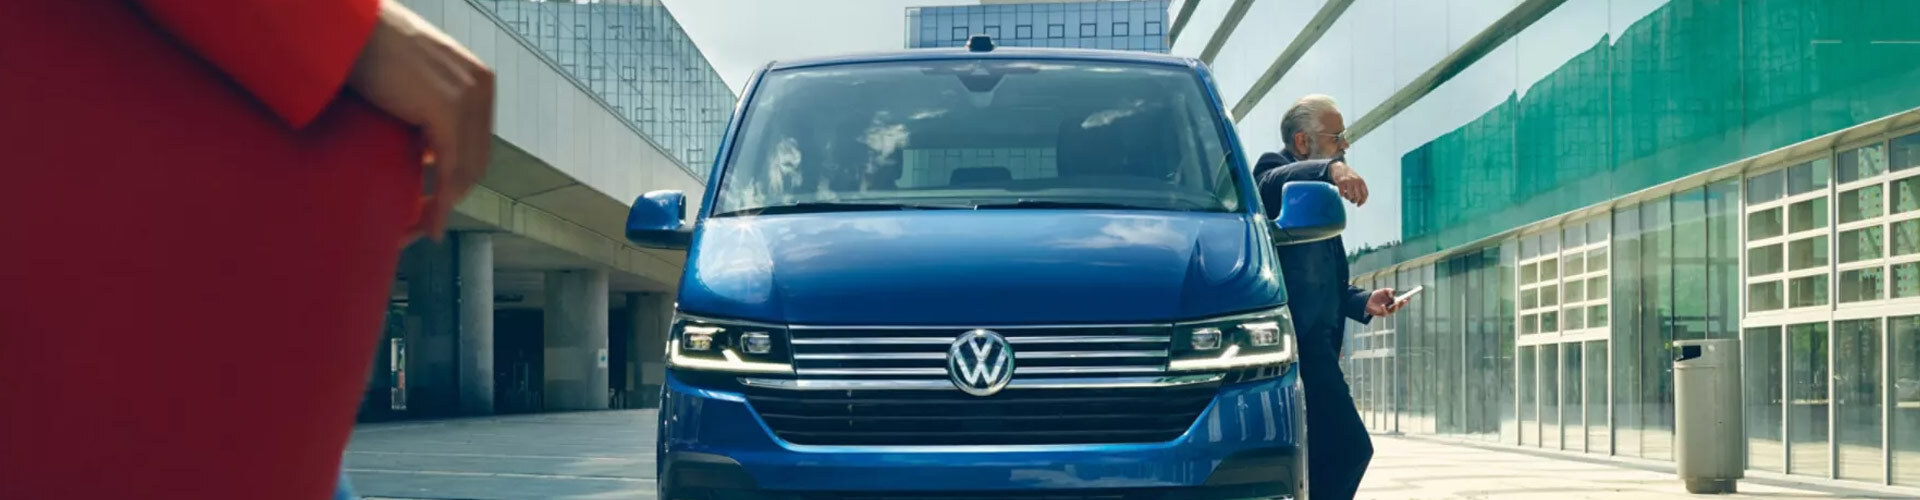 Frontansicht des VW Caravelle